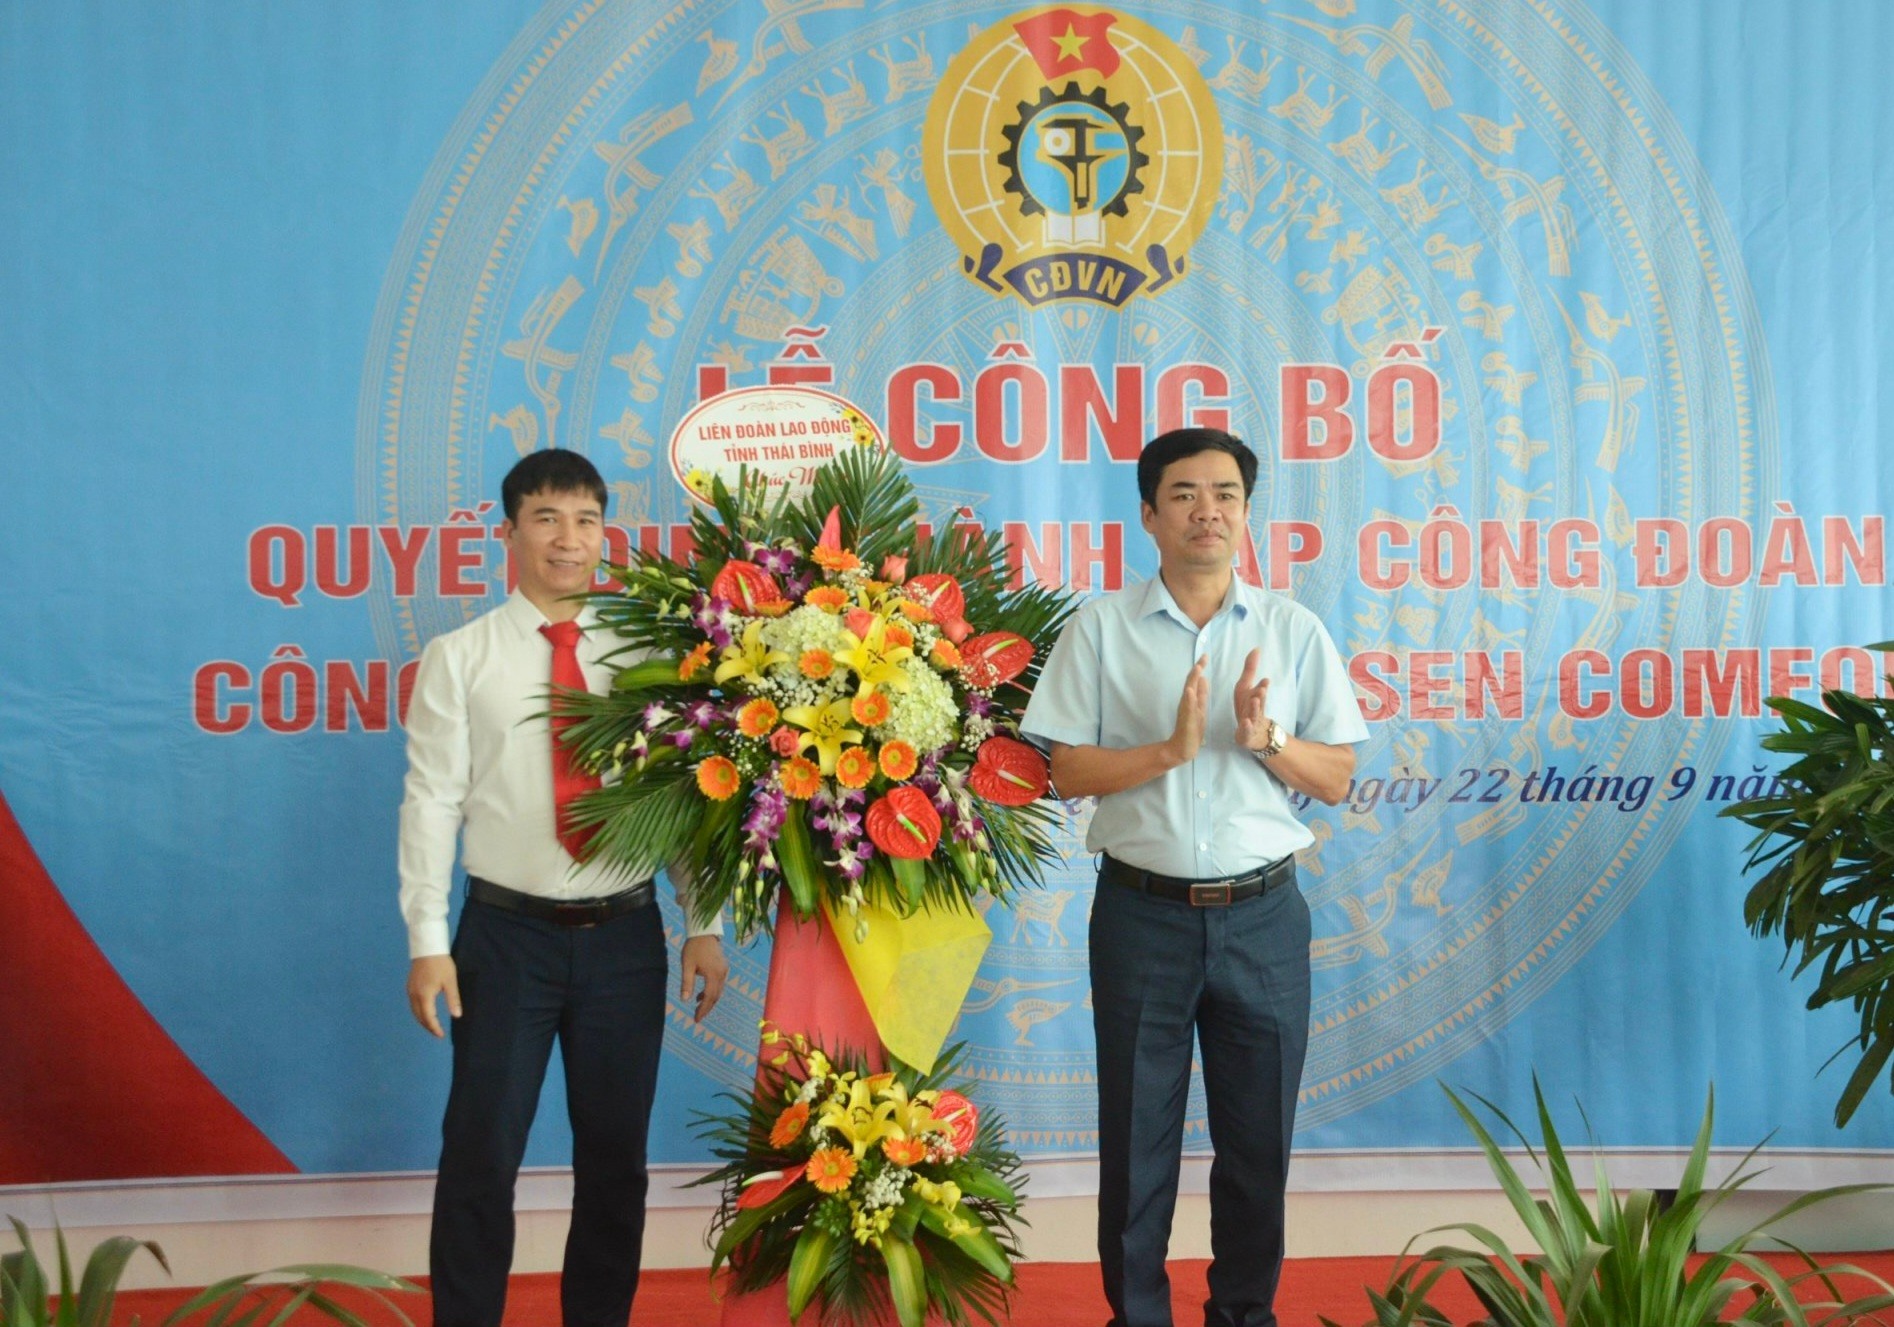 ประธานสมาพันธ์แรงงานจังหวัดไทยบิ่ญ - บุยซวนวินห์ มอบดอกไม้แสดงความยินดีกับการก่อตั้งบริษัท Huong Sen Comfor Textile Co., Ltd.  รูปถ่าย: WB